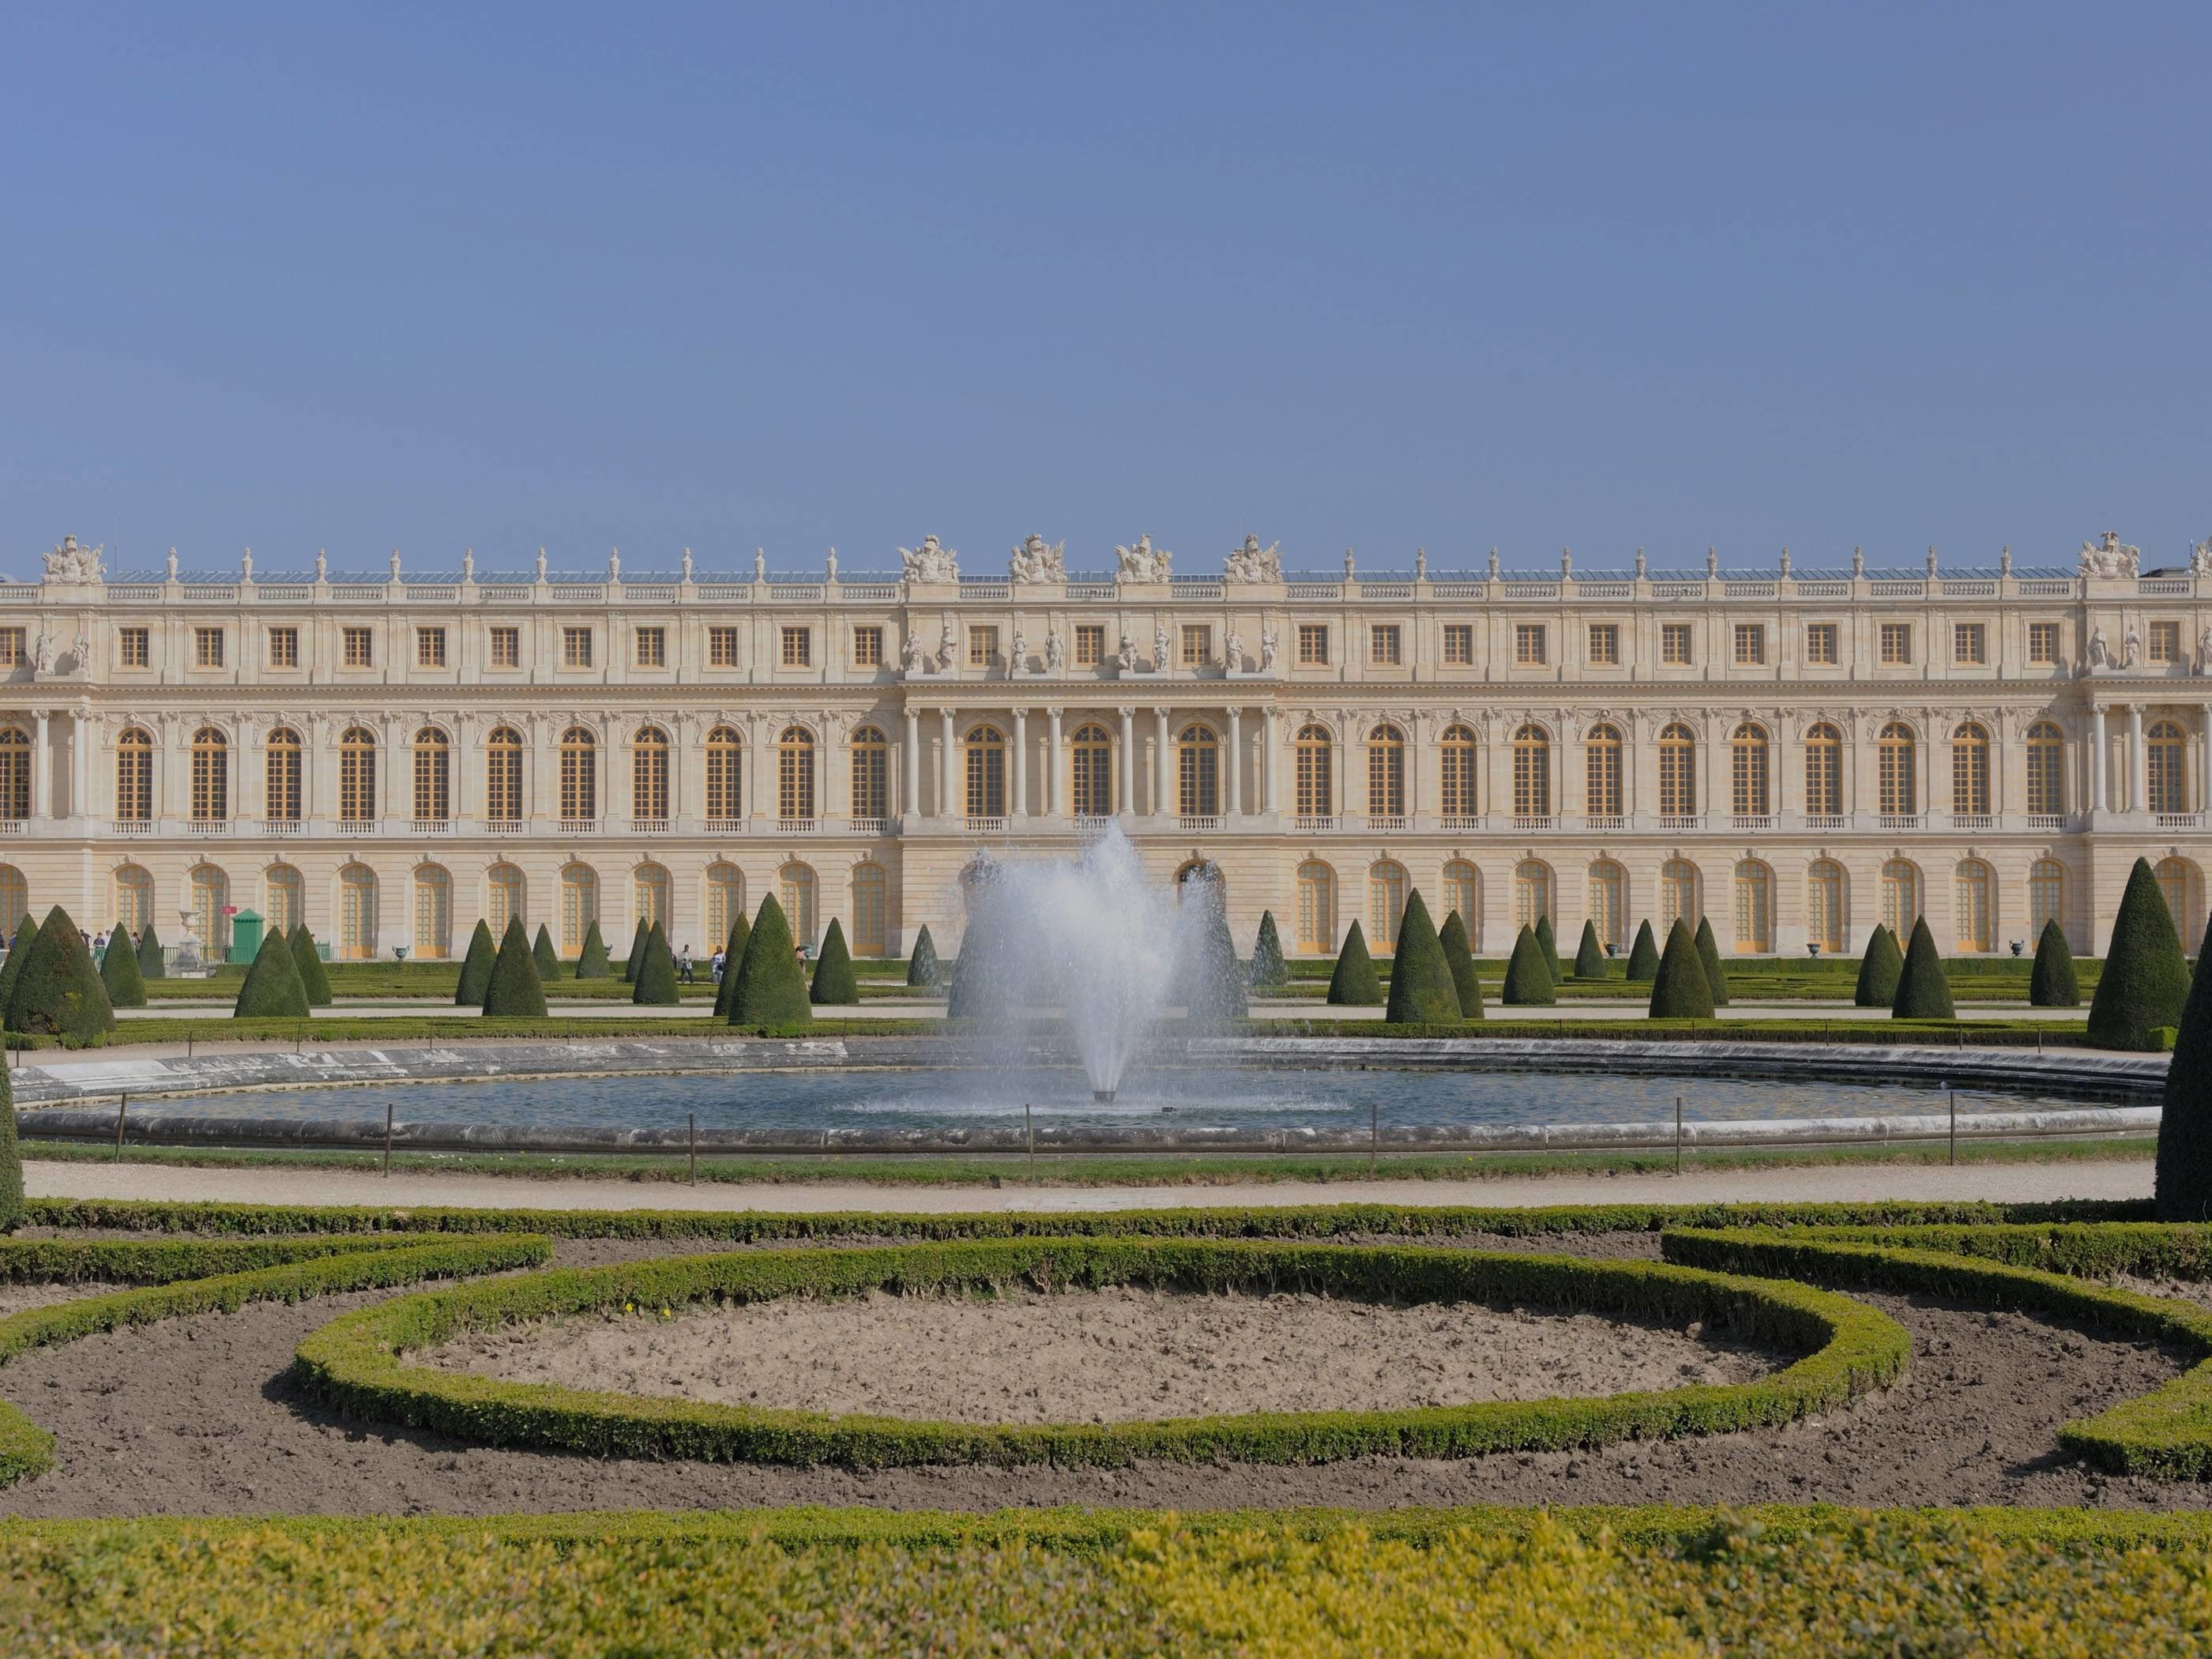 Chateau versailles. Версальский дворец. Версаль. Версальский дворцово-парковый комплекс, Франция. Королевский дворец в Версале. Дворец и парк в Версале Франция.